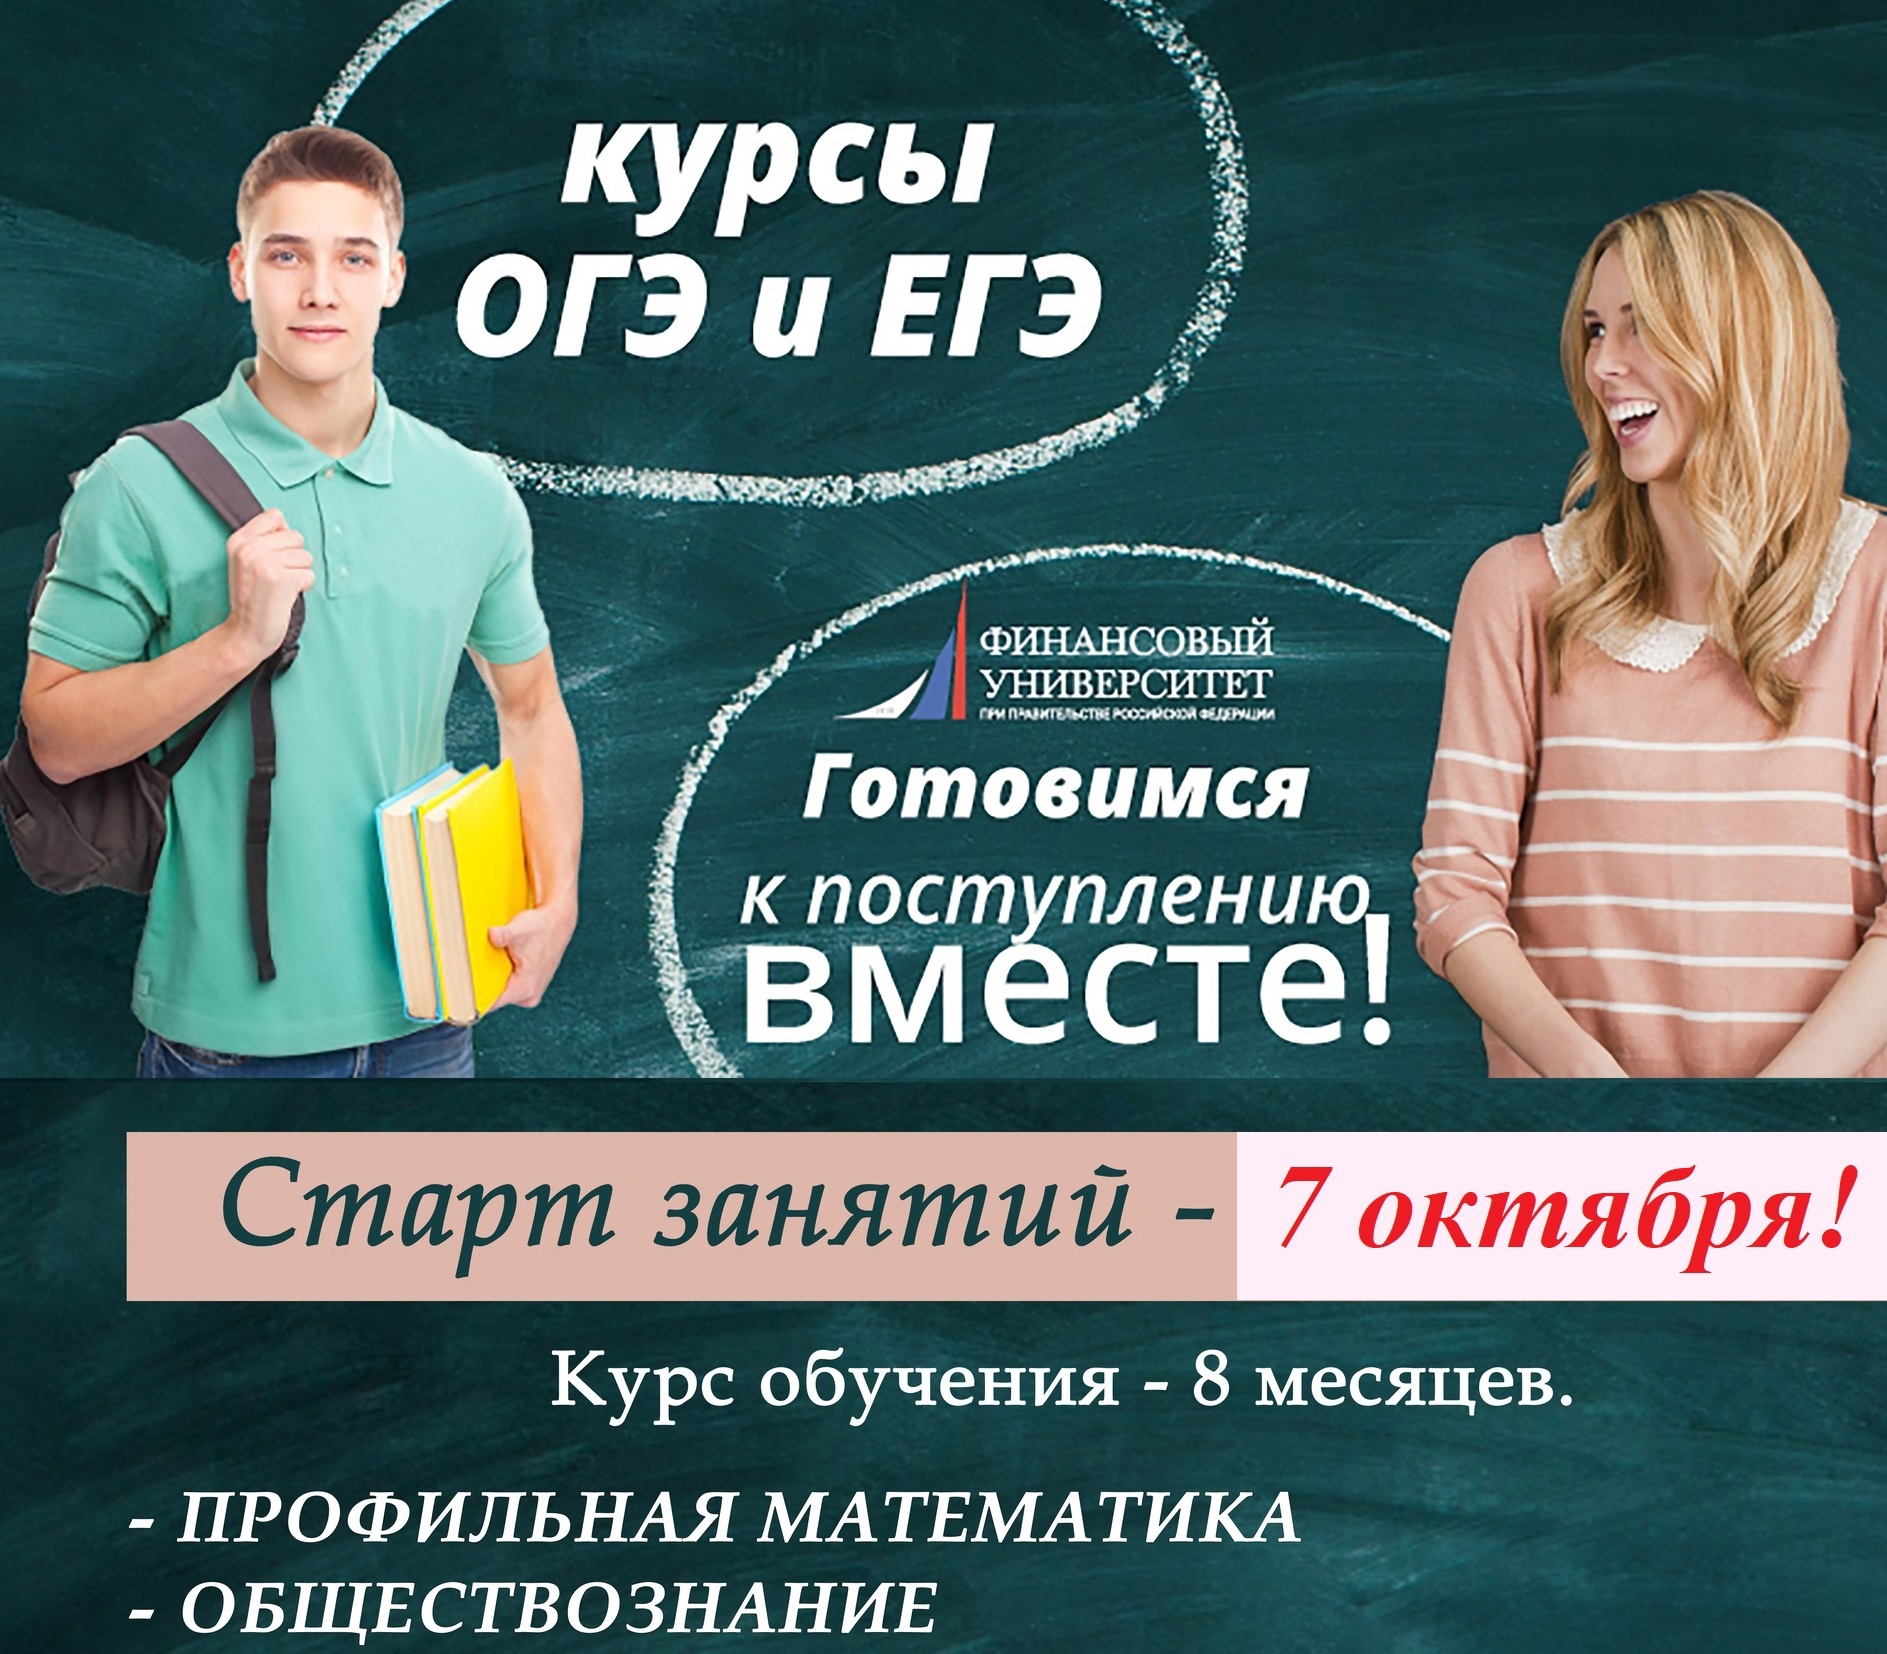 Финансовый Университет при Правительстве РФ (Курский филиал) приглашает на интенсивный курс подготовки к ЕГЭ! Старт занятий в октябре!